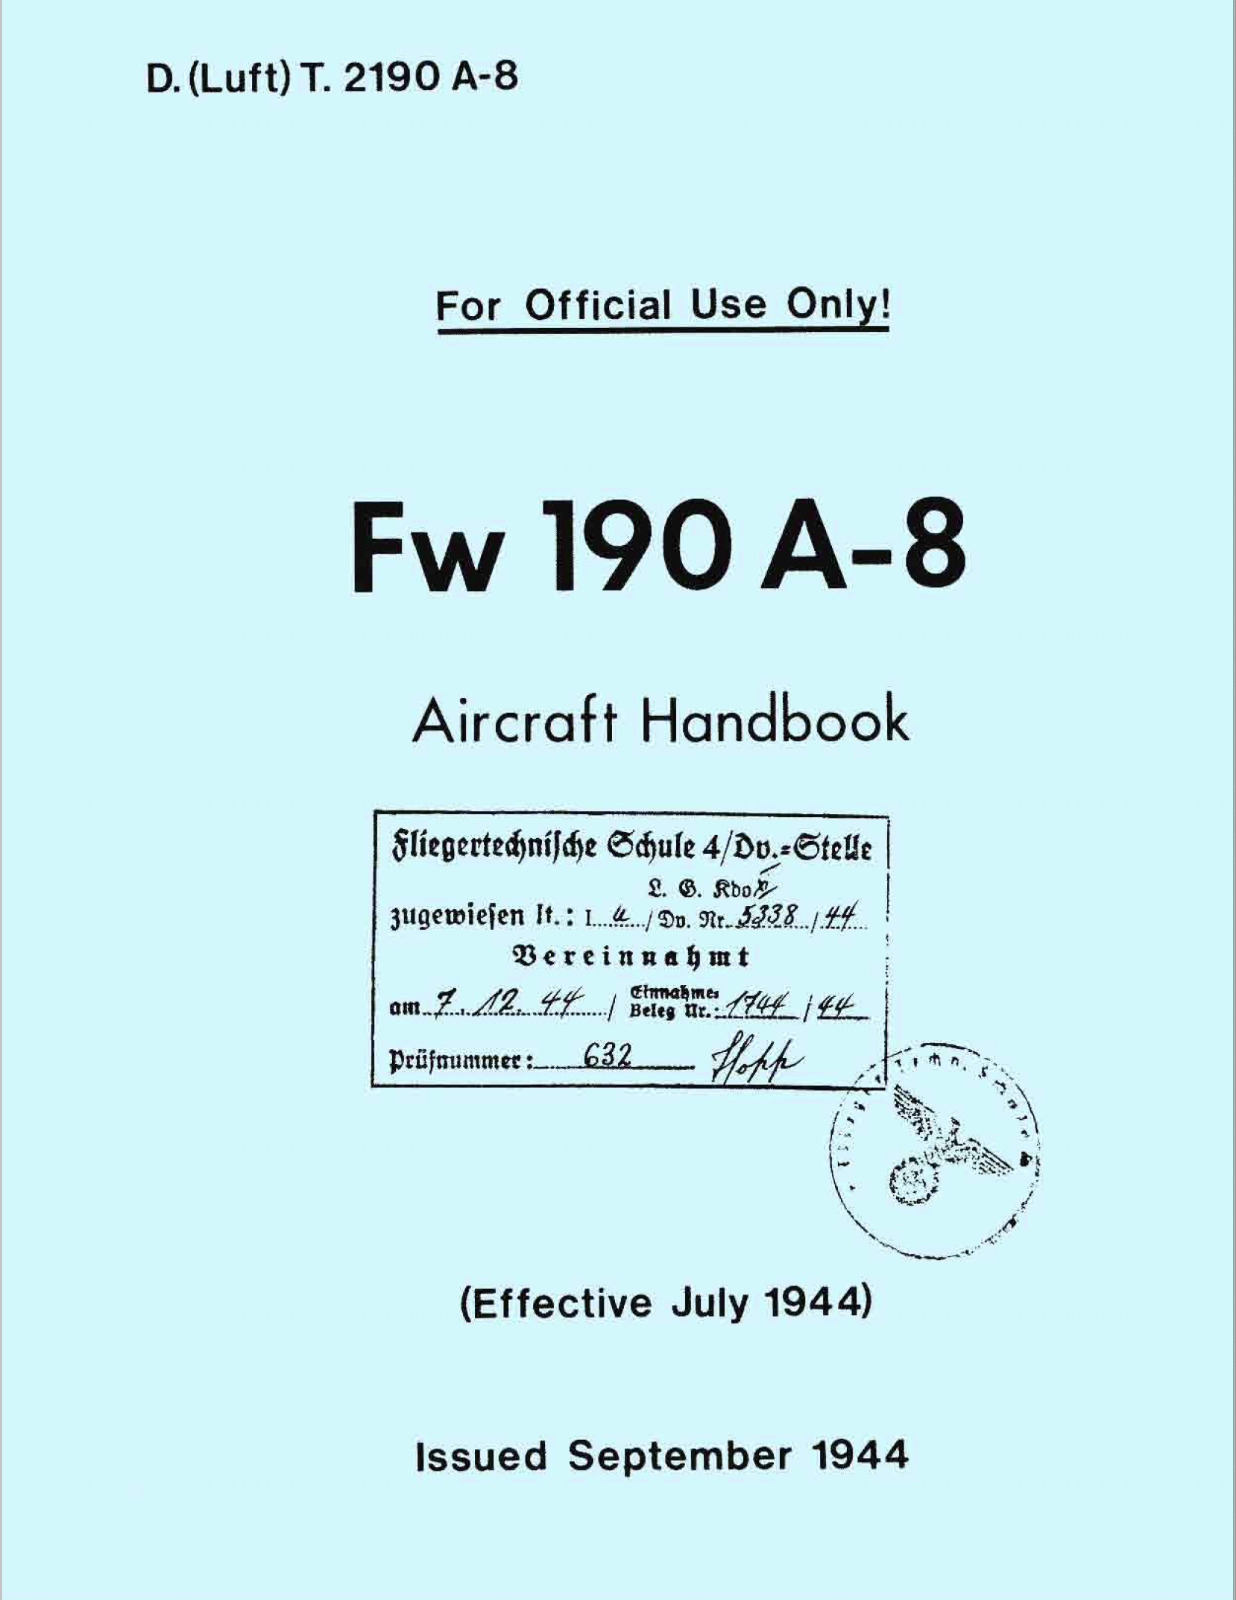 131 Page 1944 Focke-Wulf Fw 190 A8 Flugzeug (In English) Flight Manual on CD